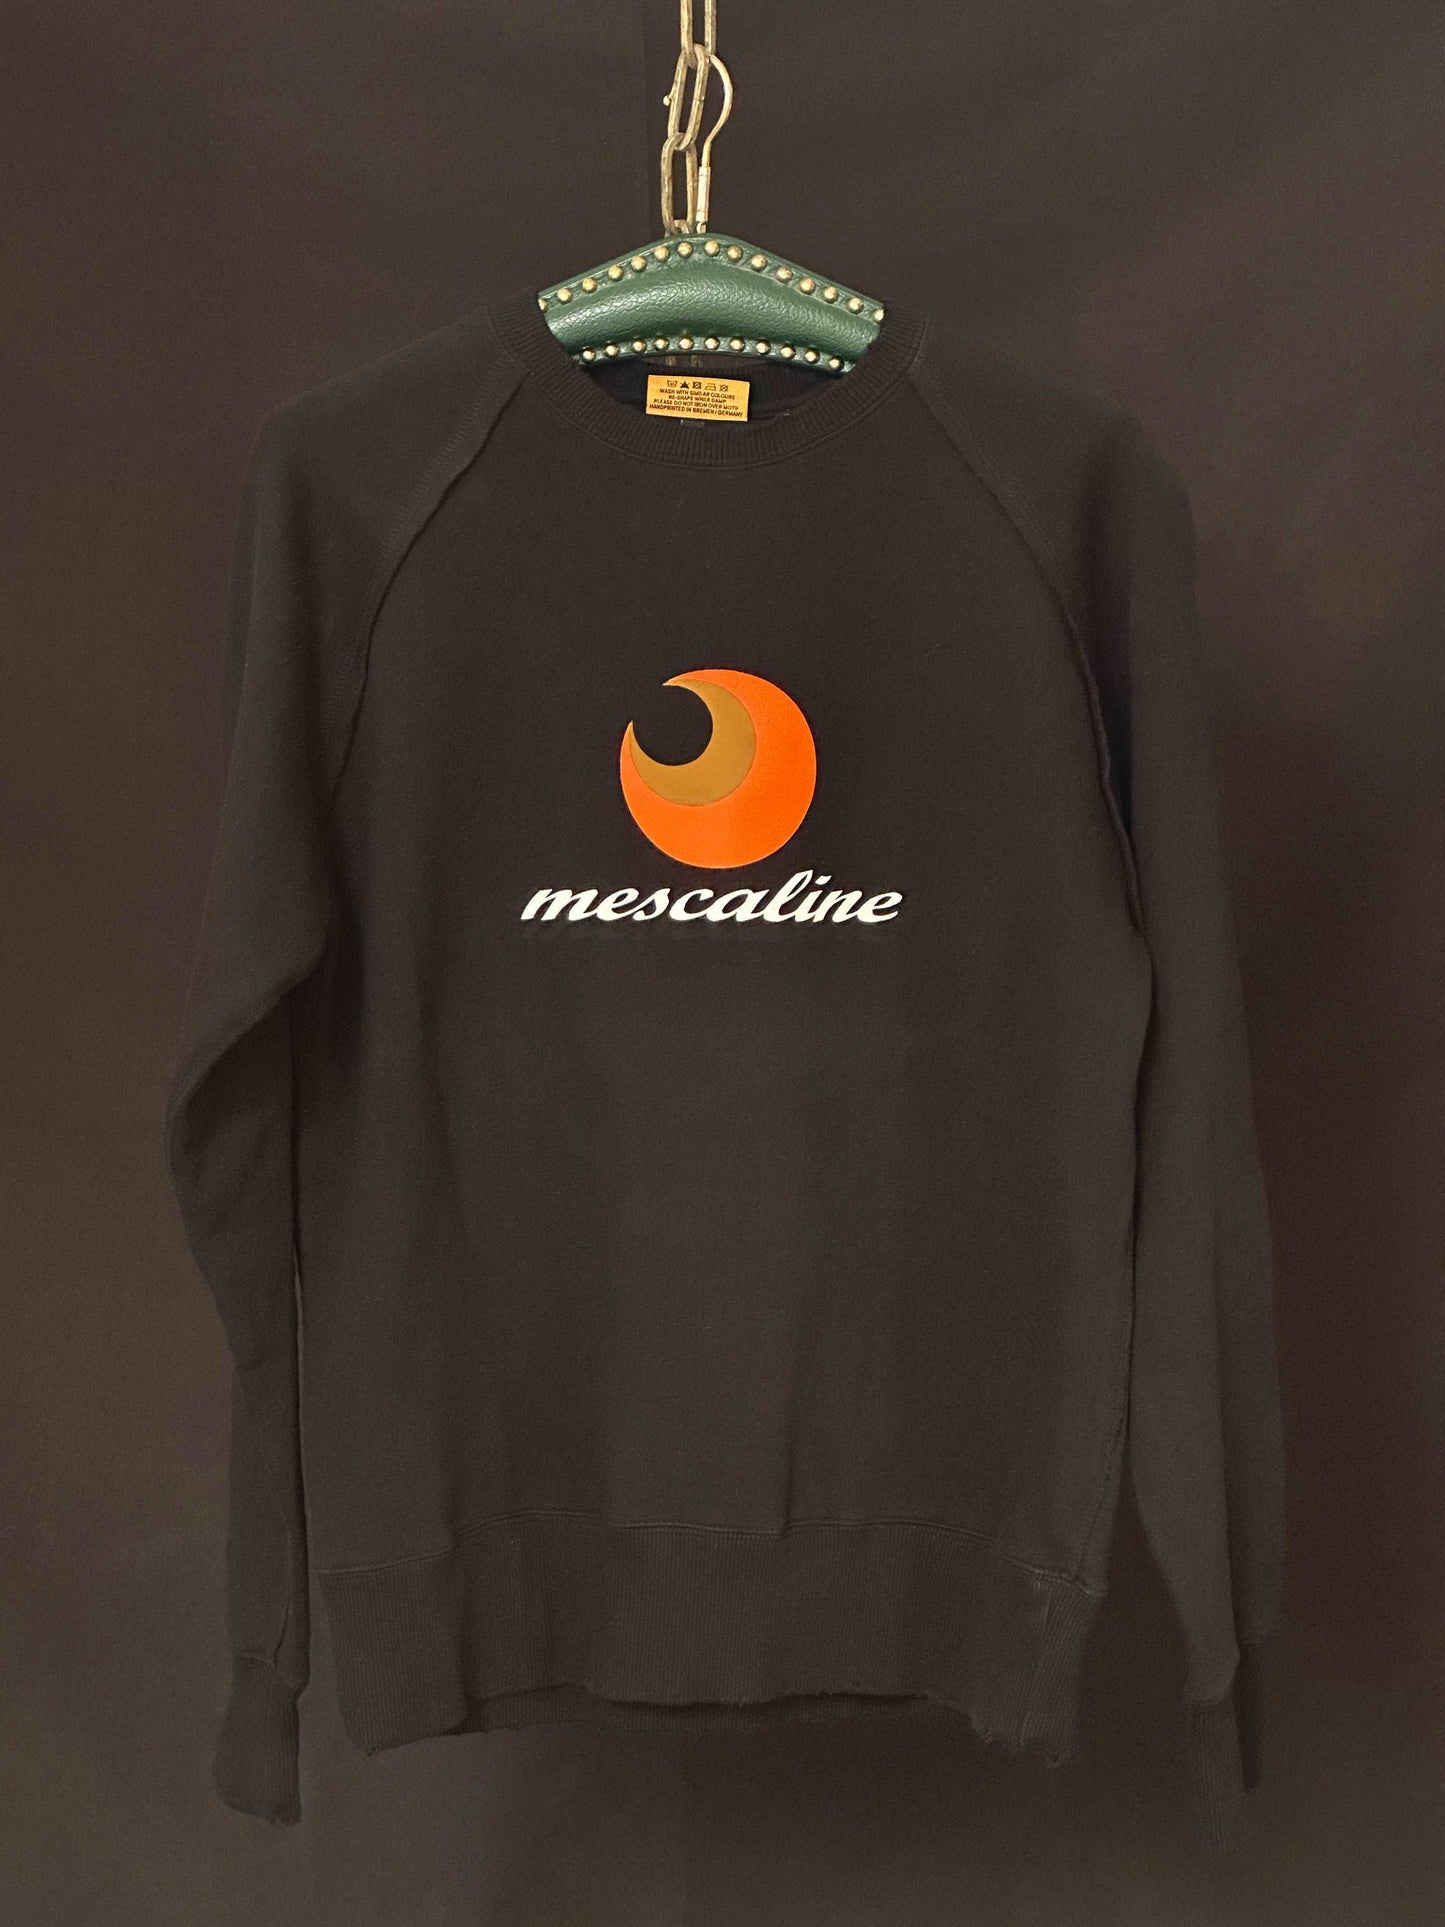 SALE Mescaline Sweatshirt